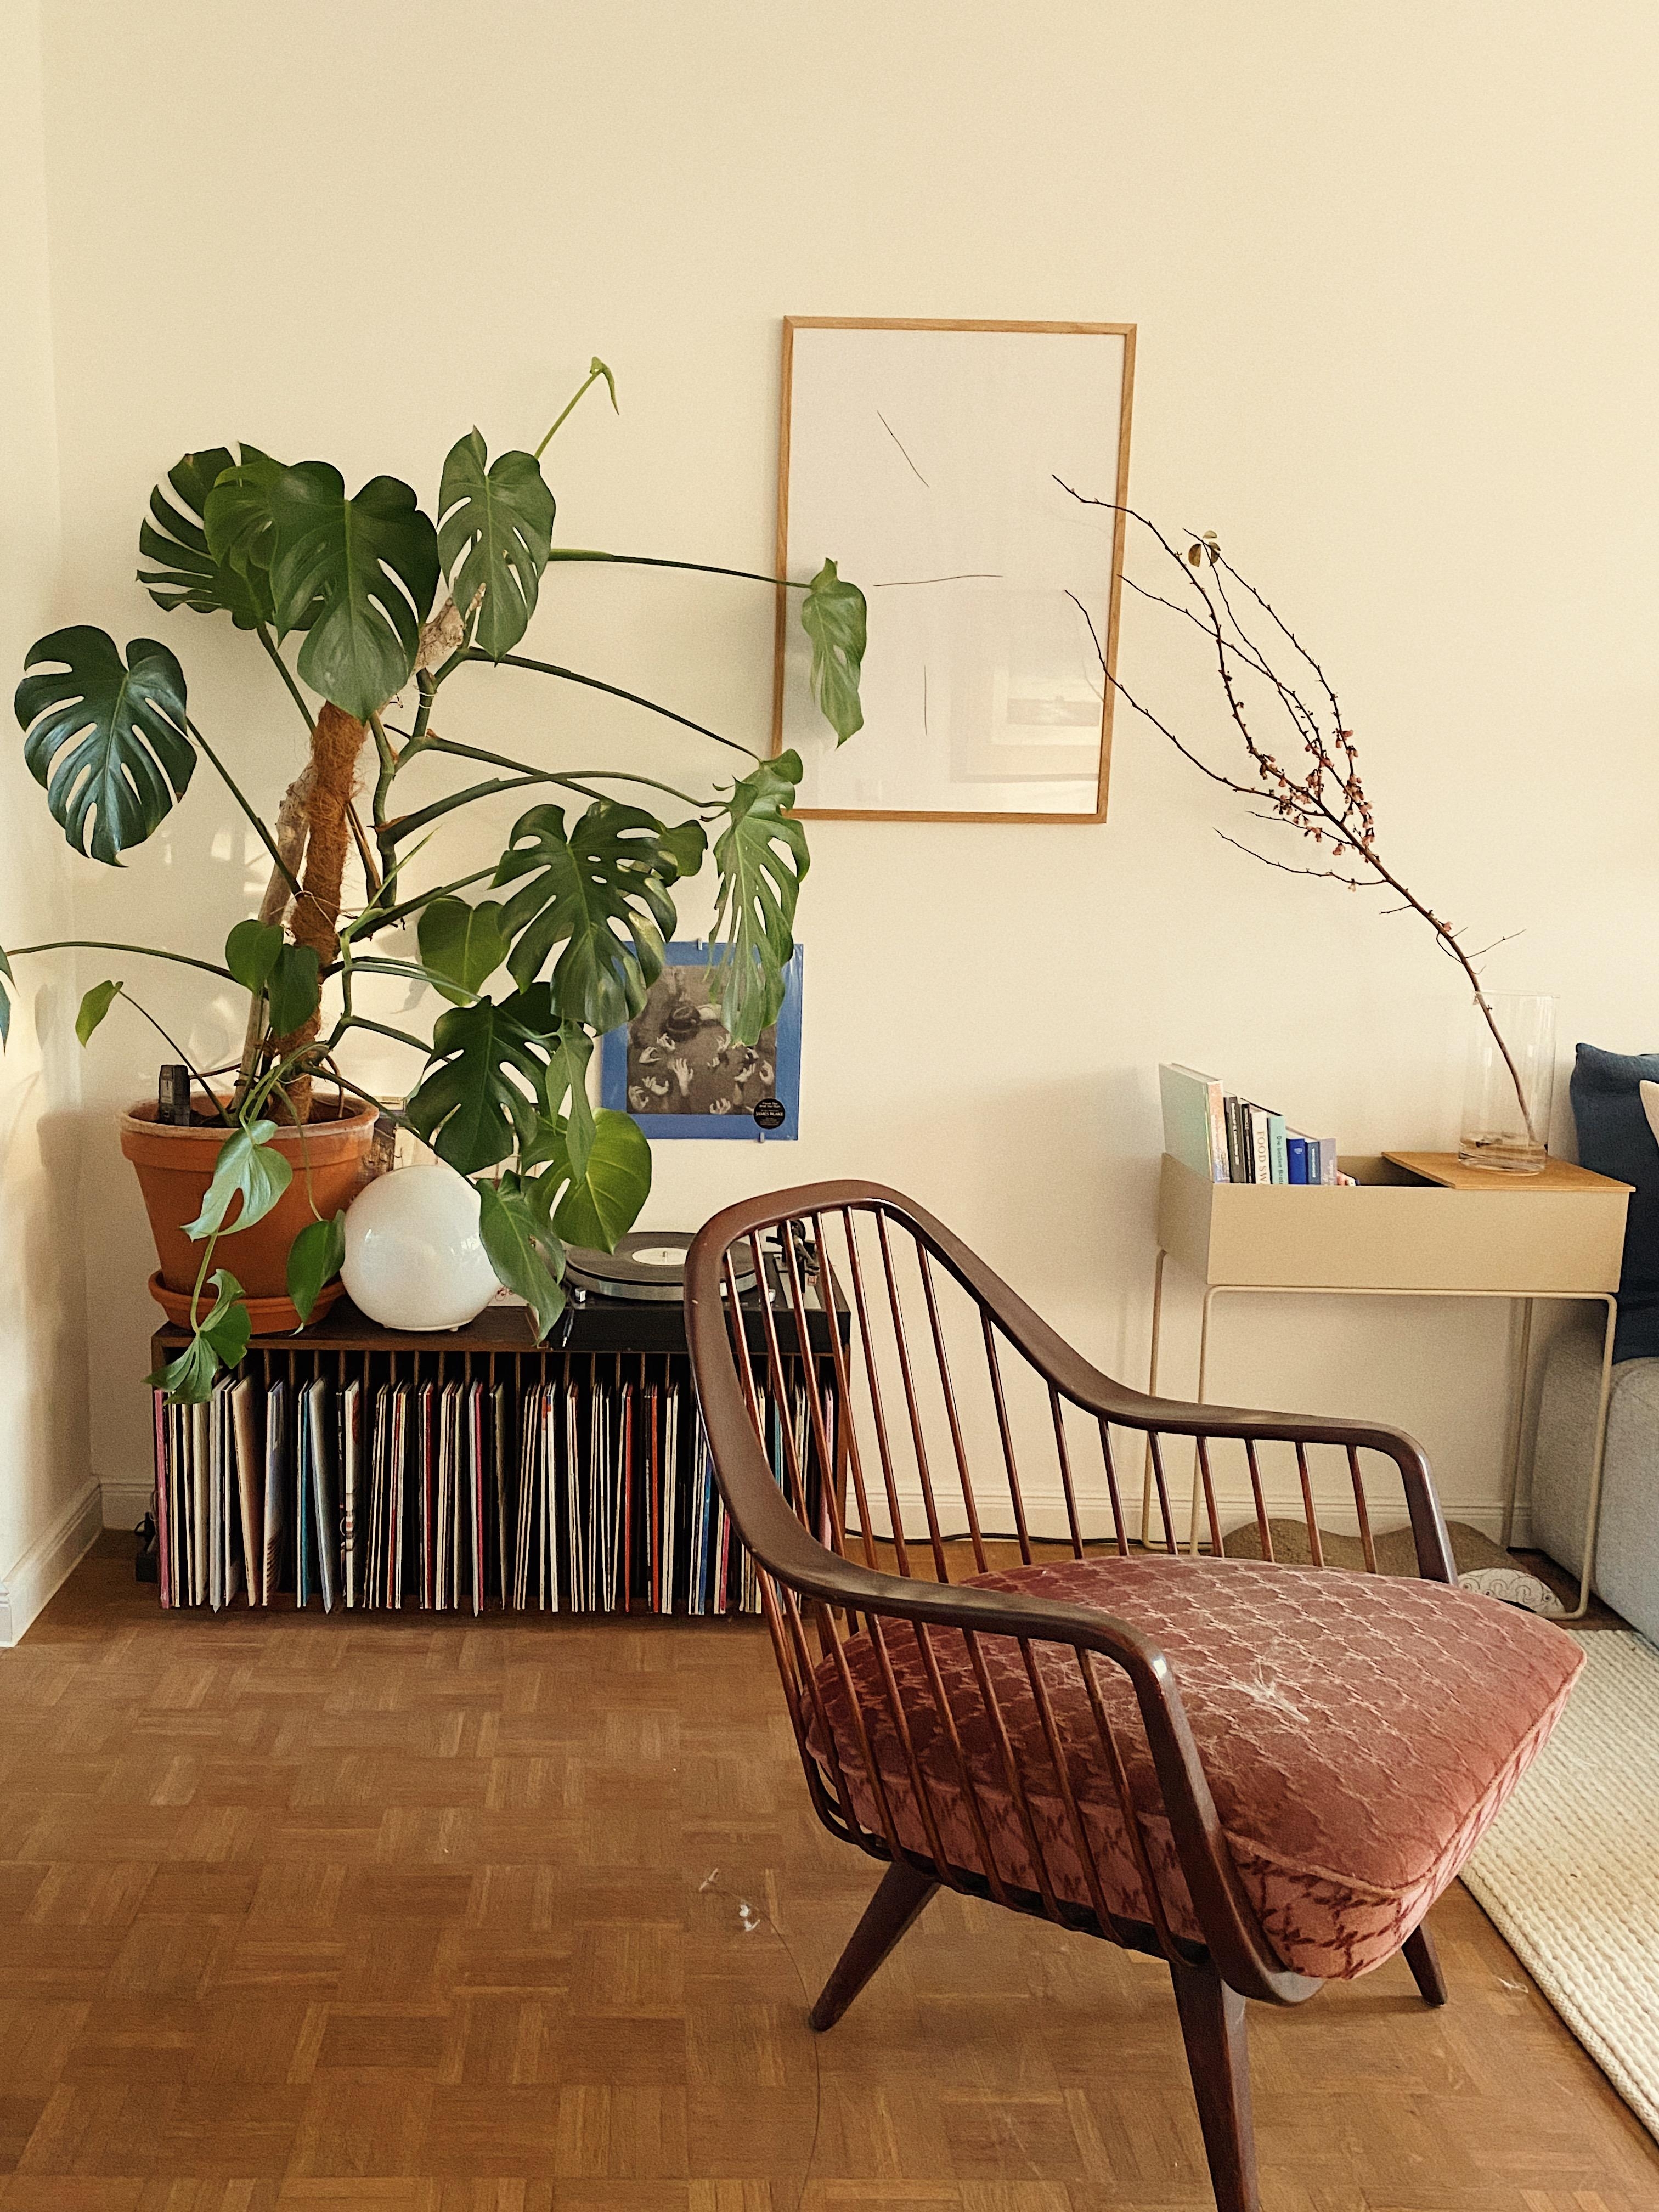 Mein Lieblingsdschungel :) #couch #monstera #pflanzenliebe #vintage